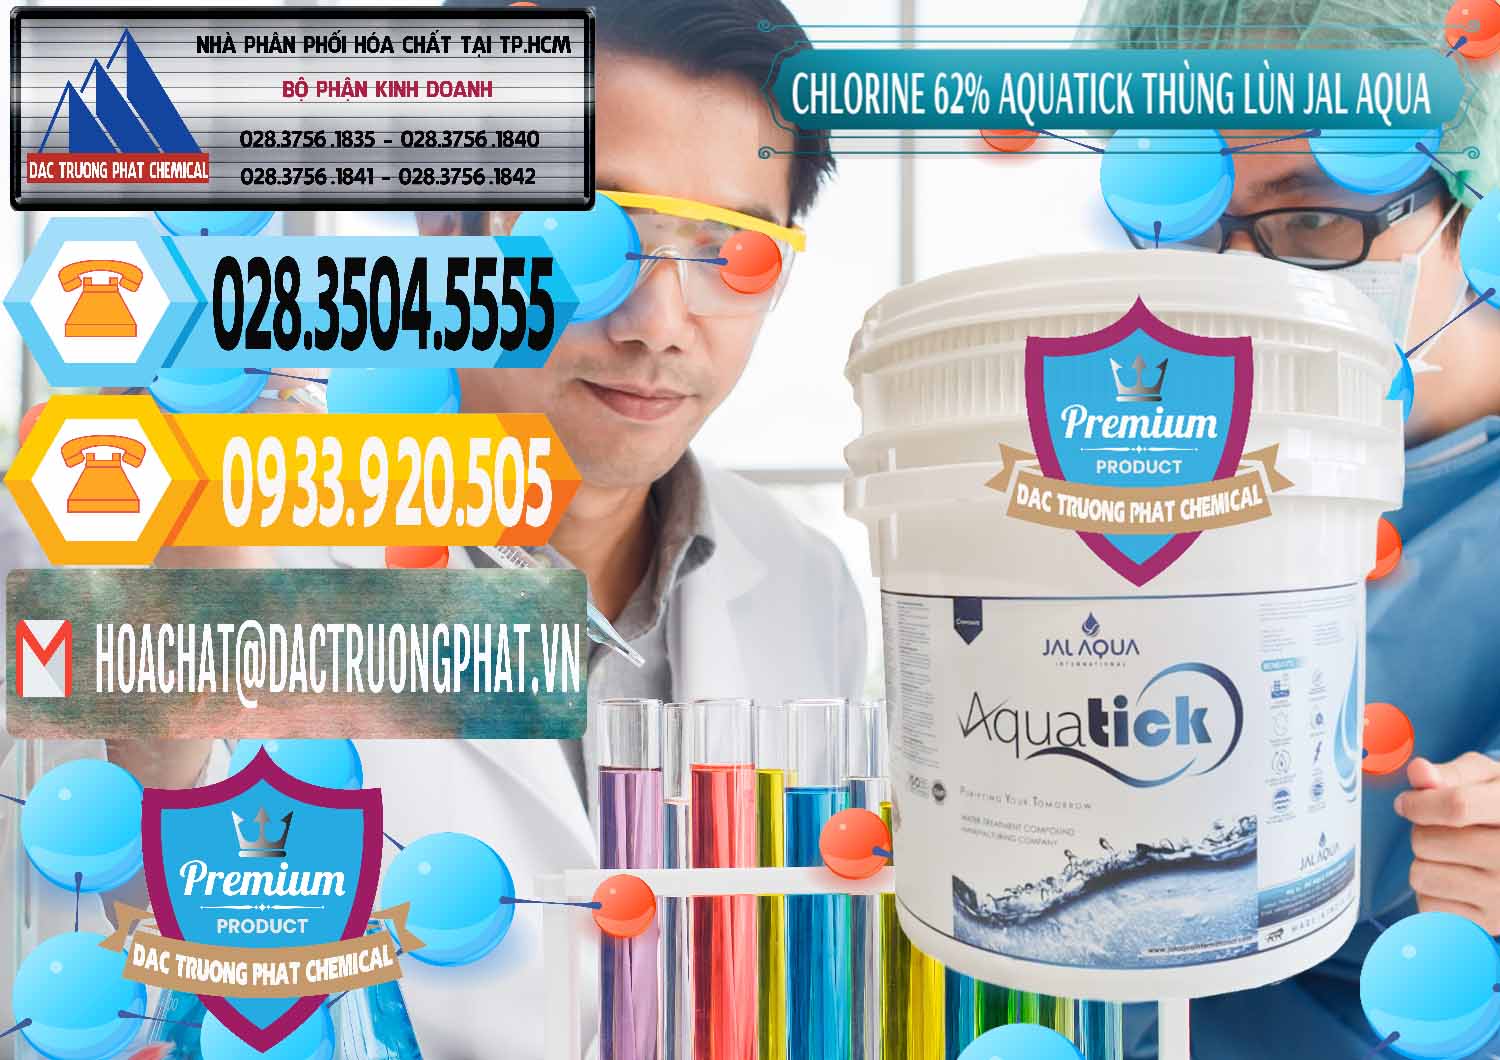 Công ty chuyên cung cấp ( bán ) Chlorine – Clorin 62% Aquatick Thùng Lùn Jal Aqua Ấn Độ India - 0238 - Nơi chuyên nhập khẩu & cung cấp hóa chất tại TP.HCM - hoachattayrua.net